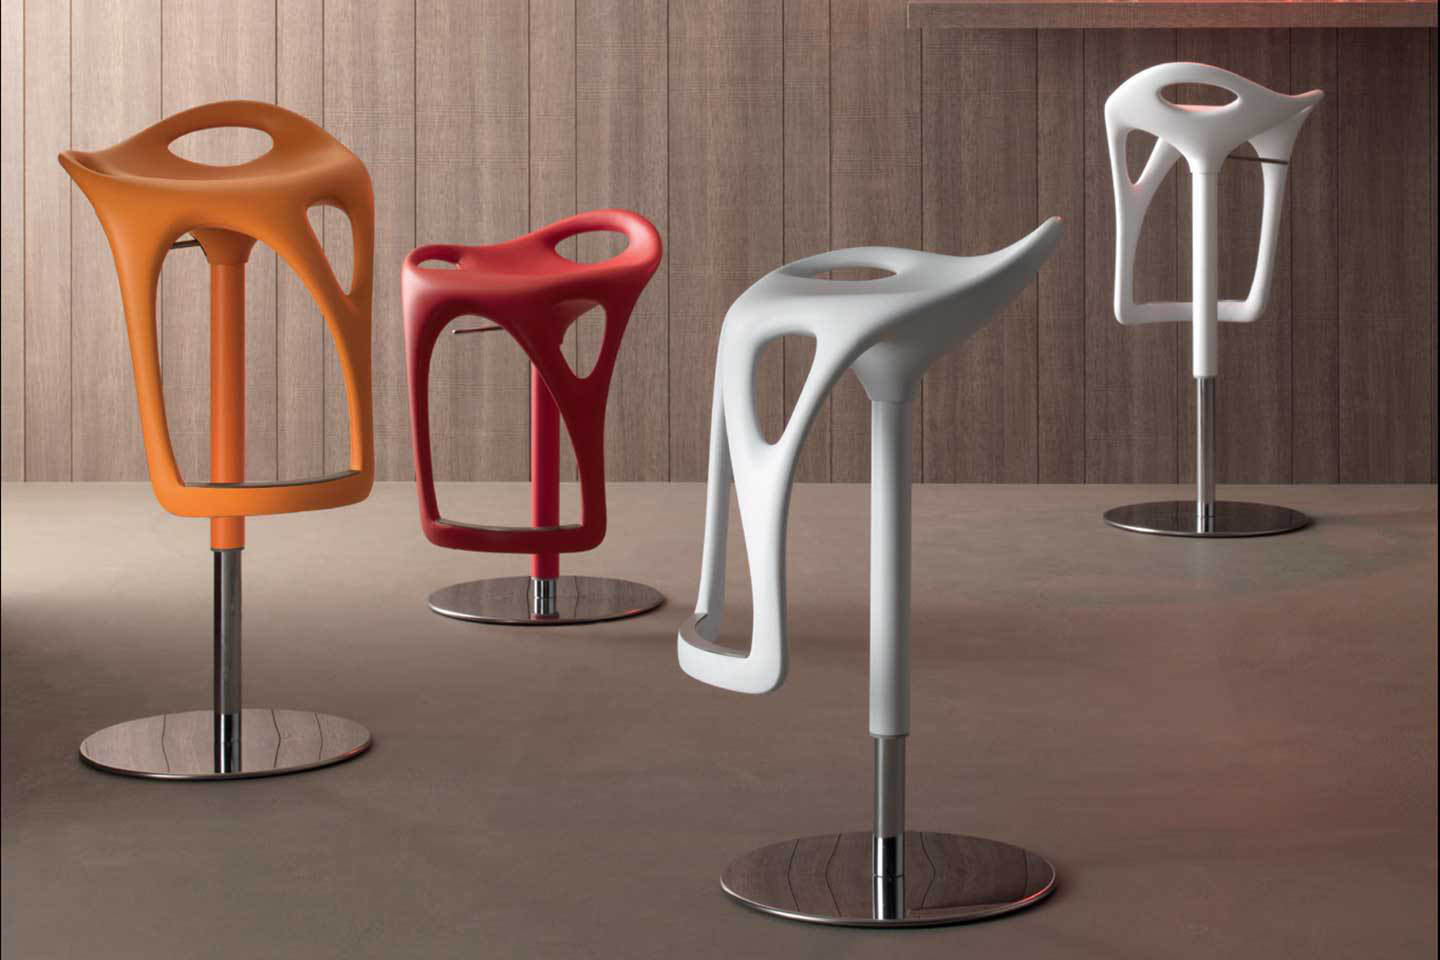 Mobili Italia_Compar FORM counter stool